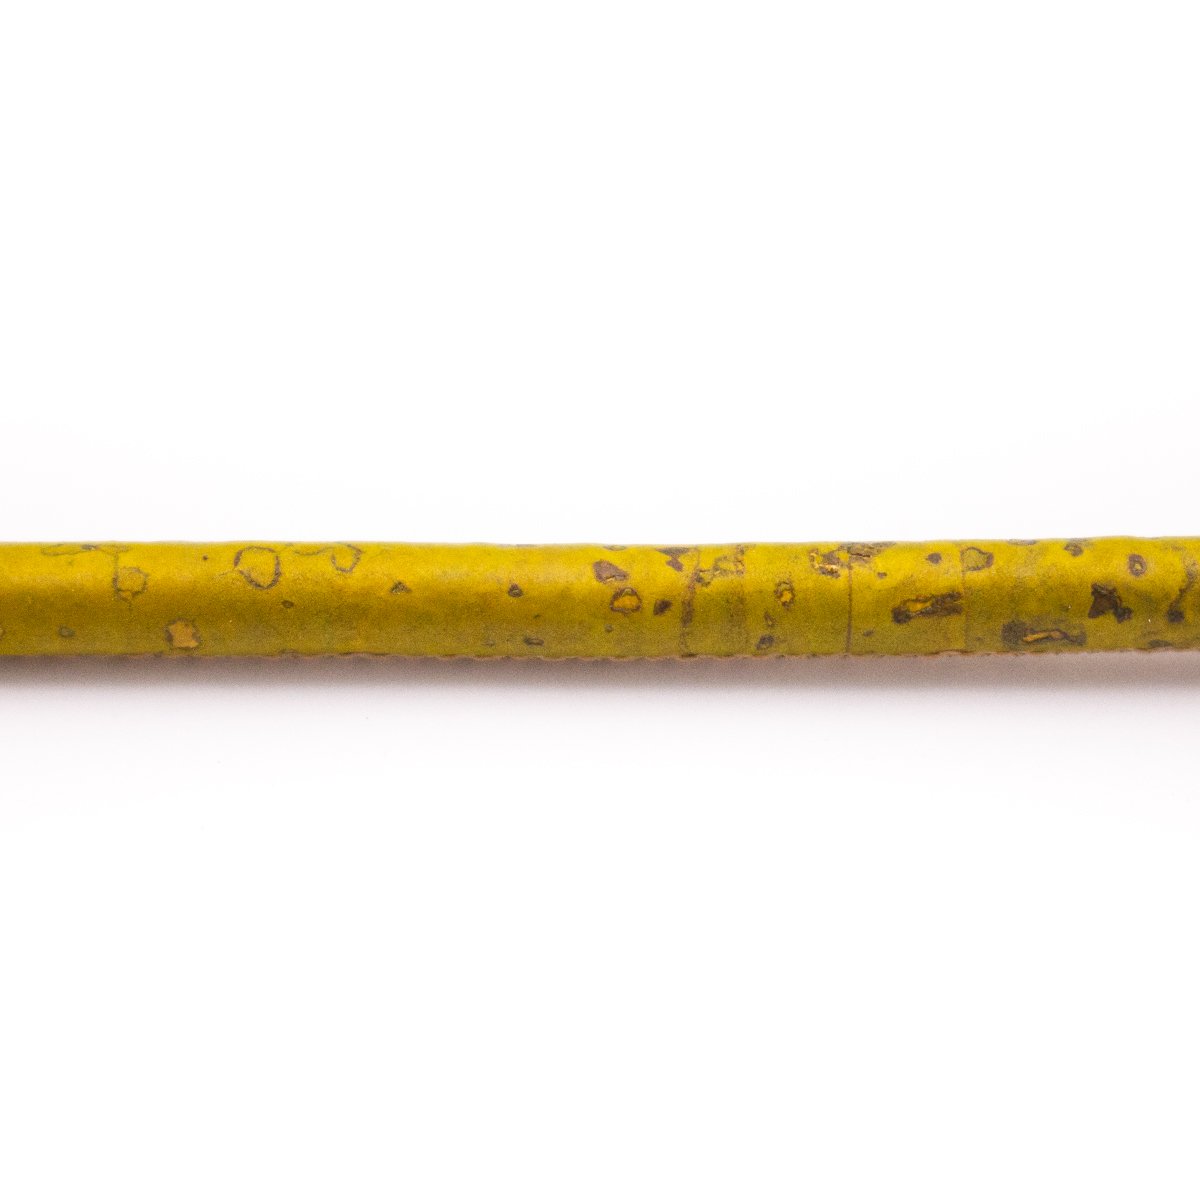 10 mètres de cordon rond en liège jaune clair 5 mm COR-504 